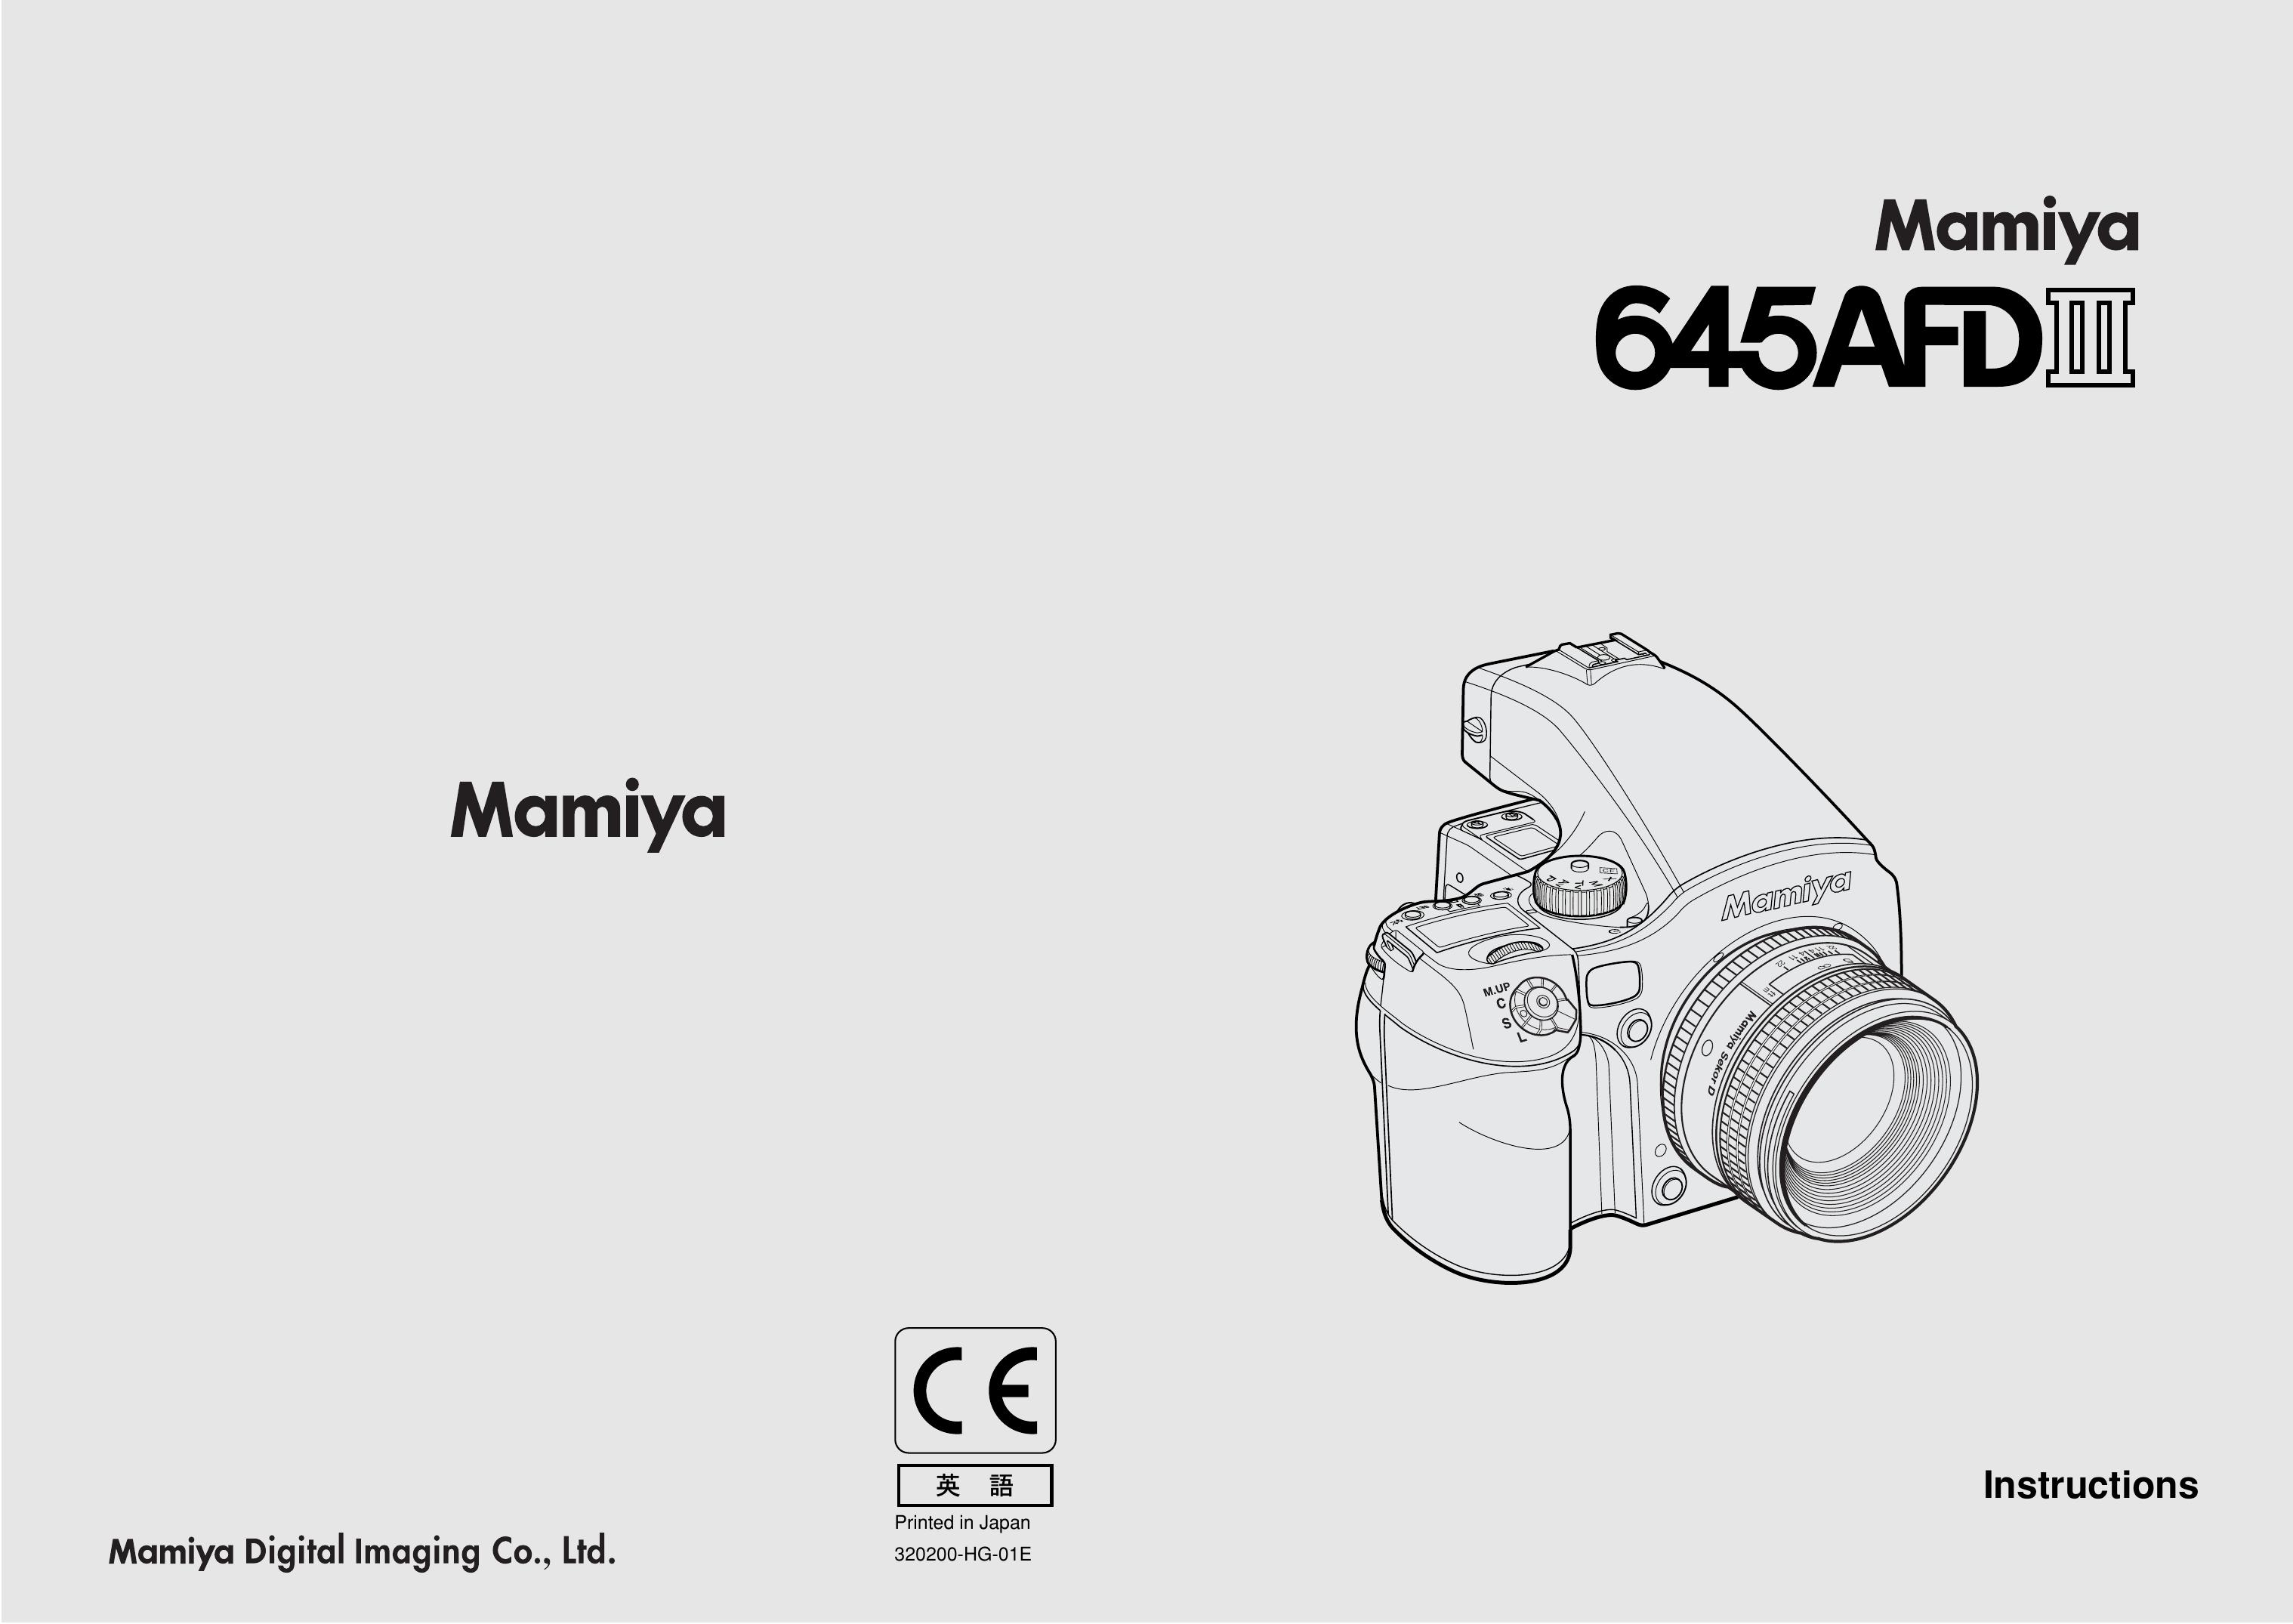 Mamiya 645 AFD III Digital Camera User Manual